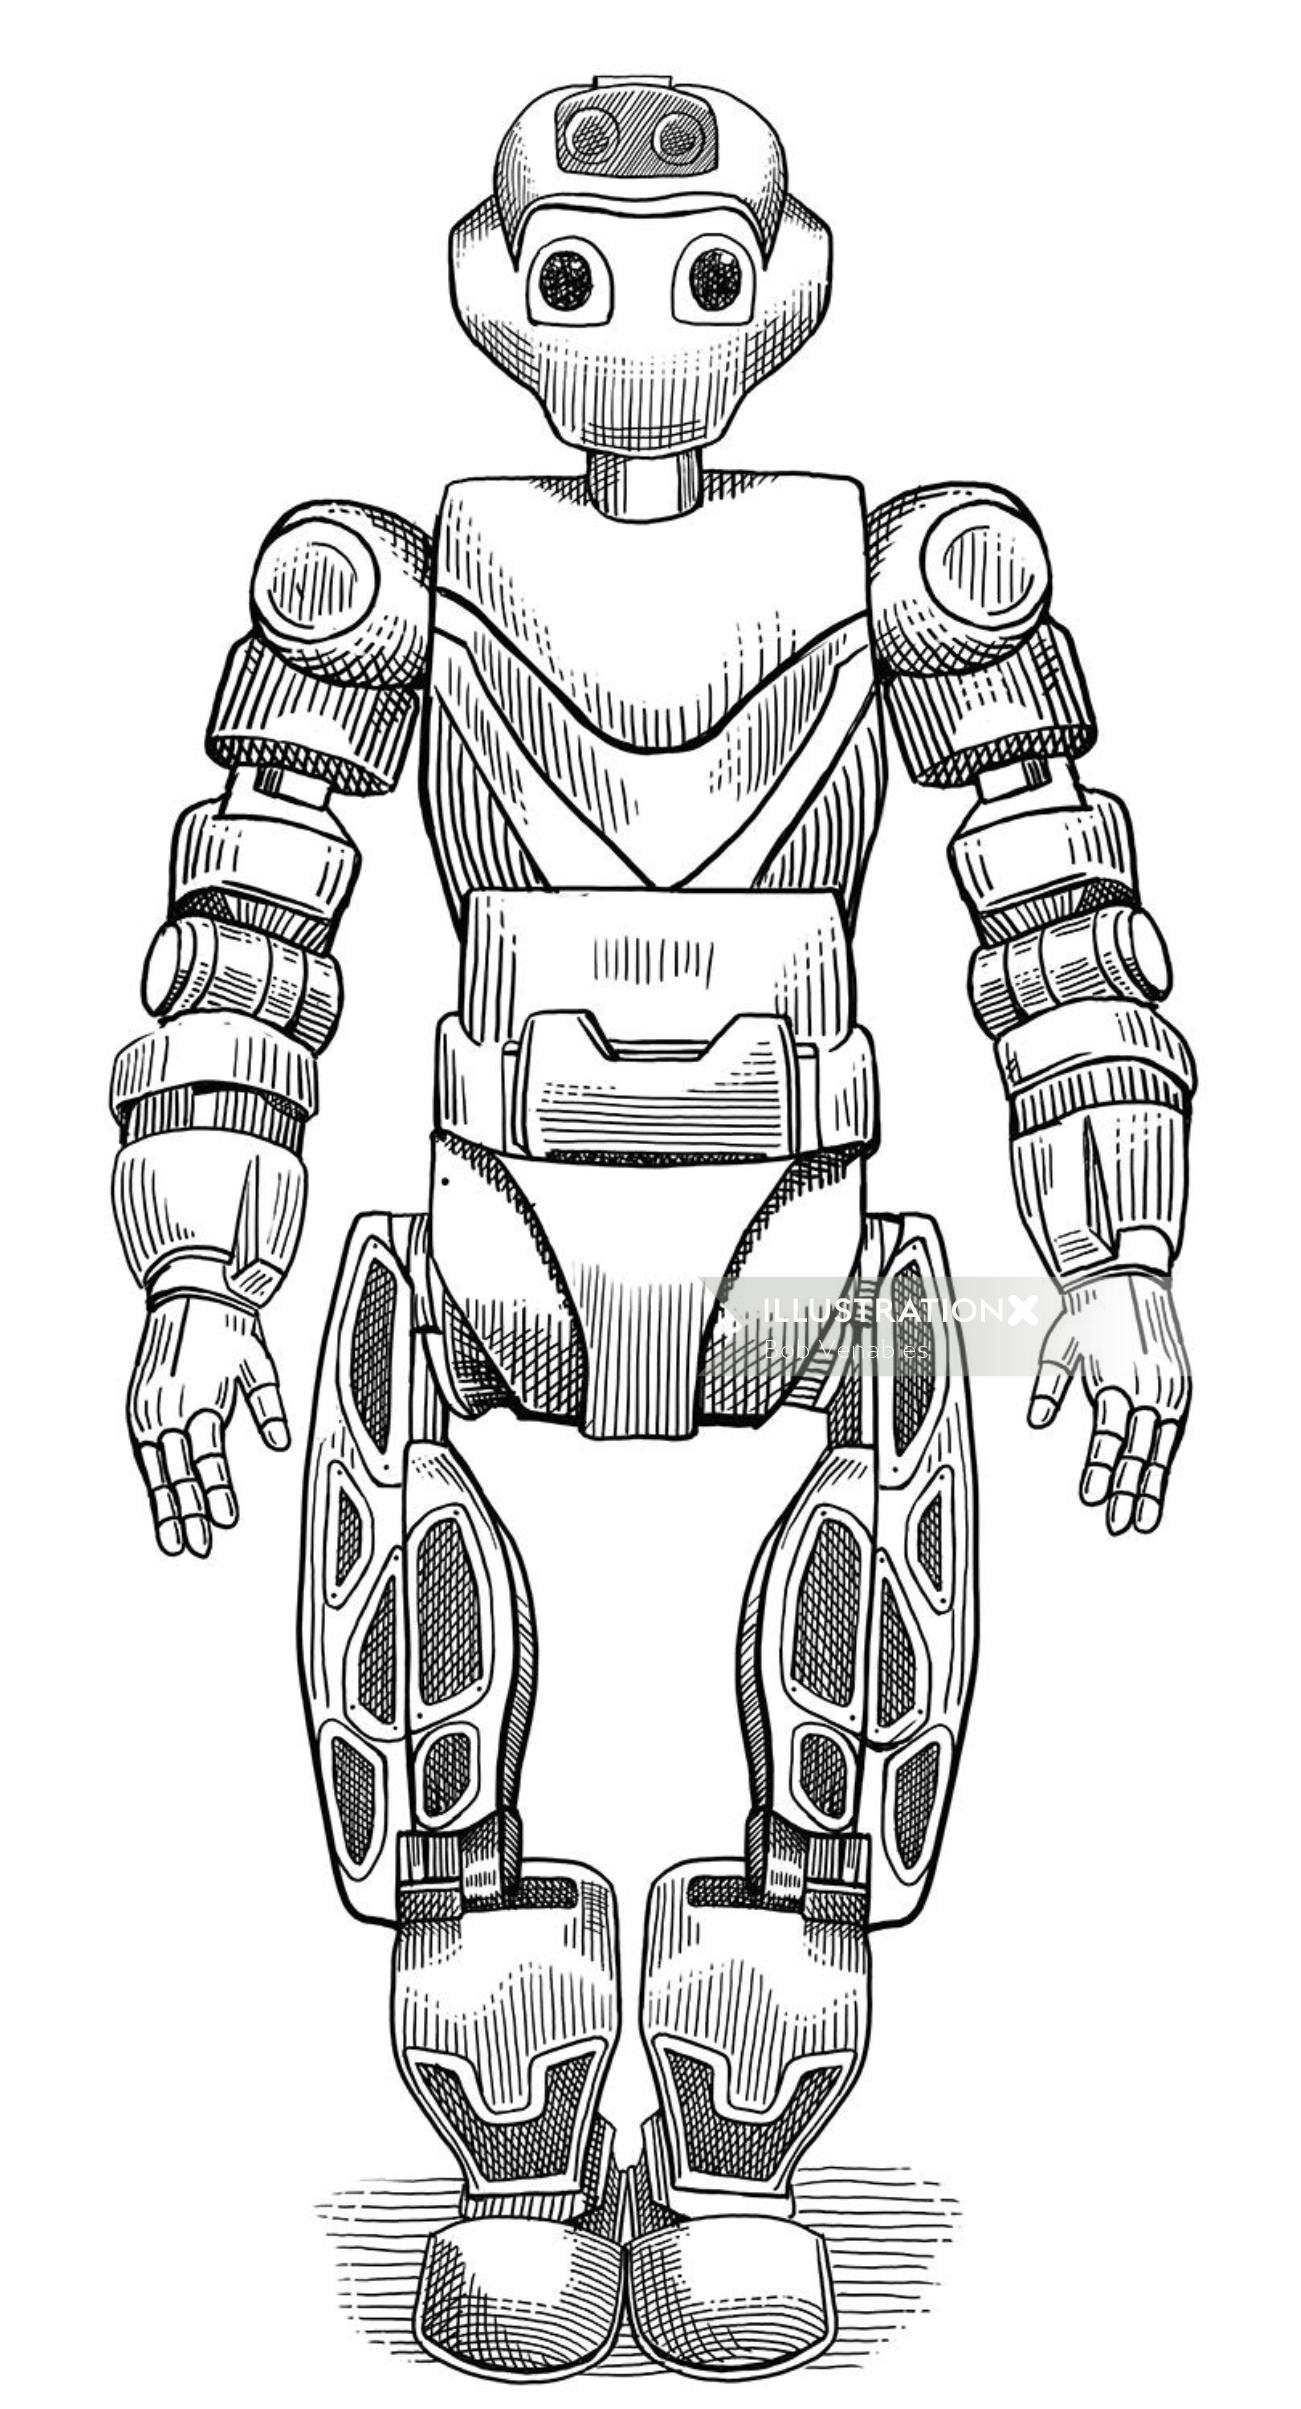 Ilustração em preto e branco do robô